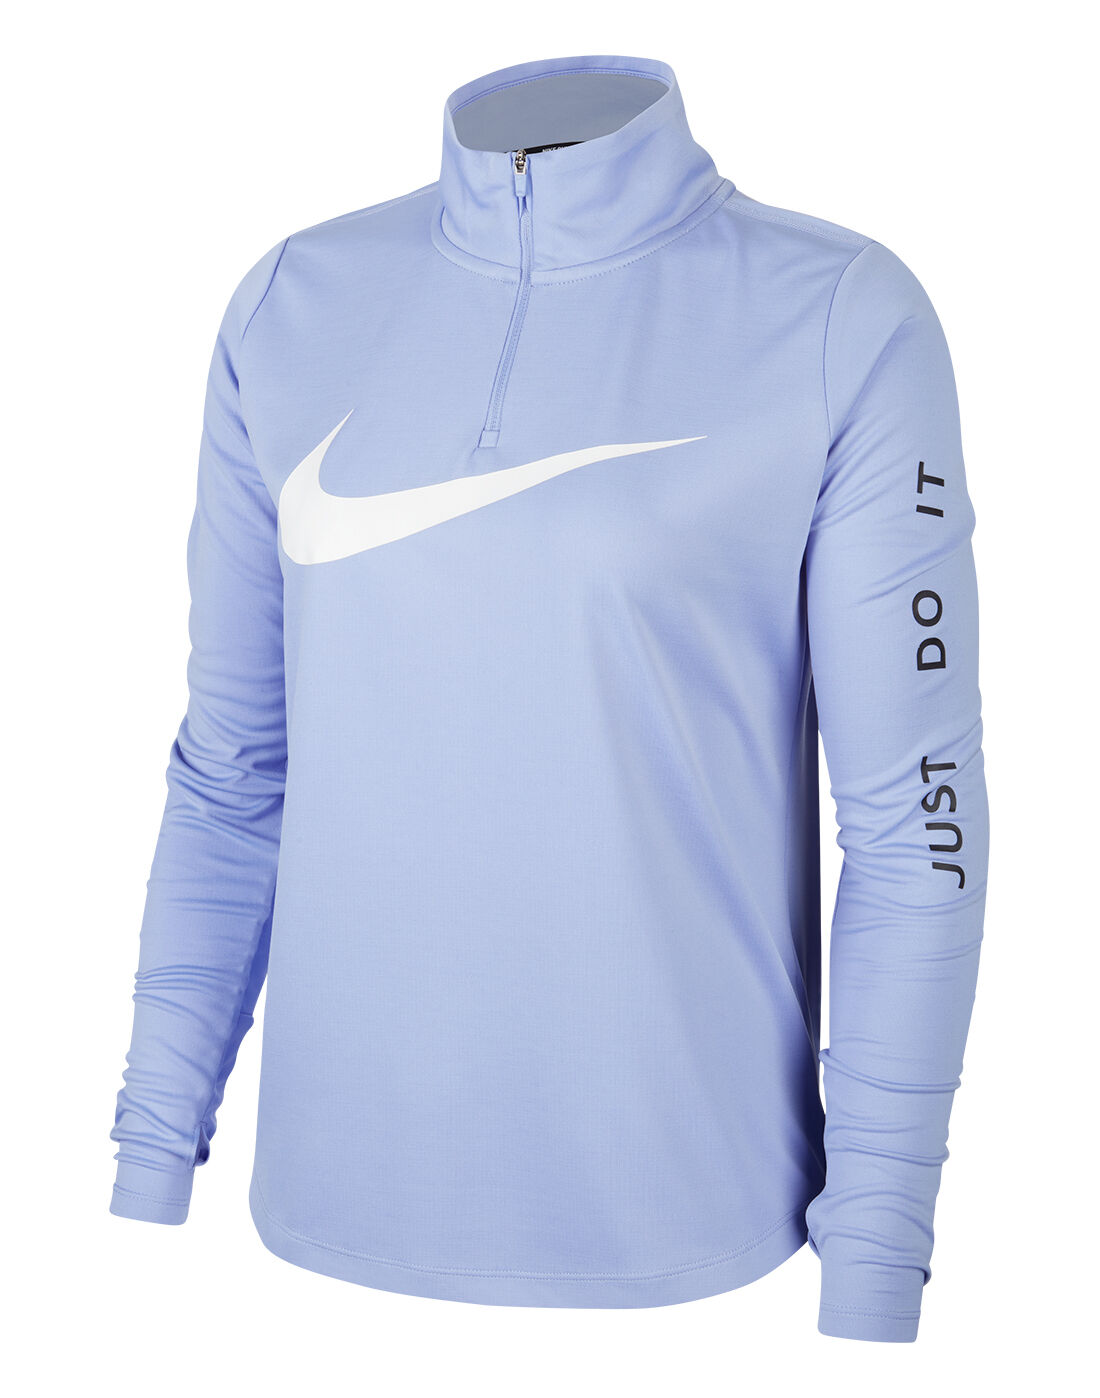 Nike Womens Pacer Half Zip Top - Blue 